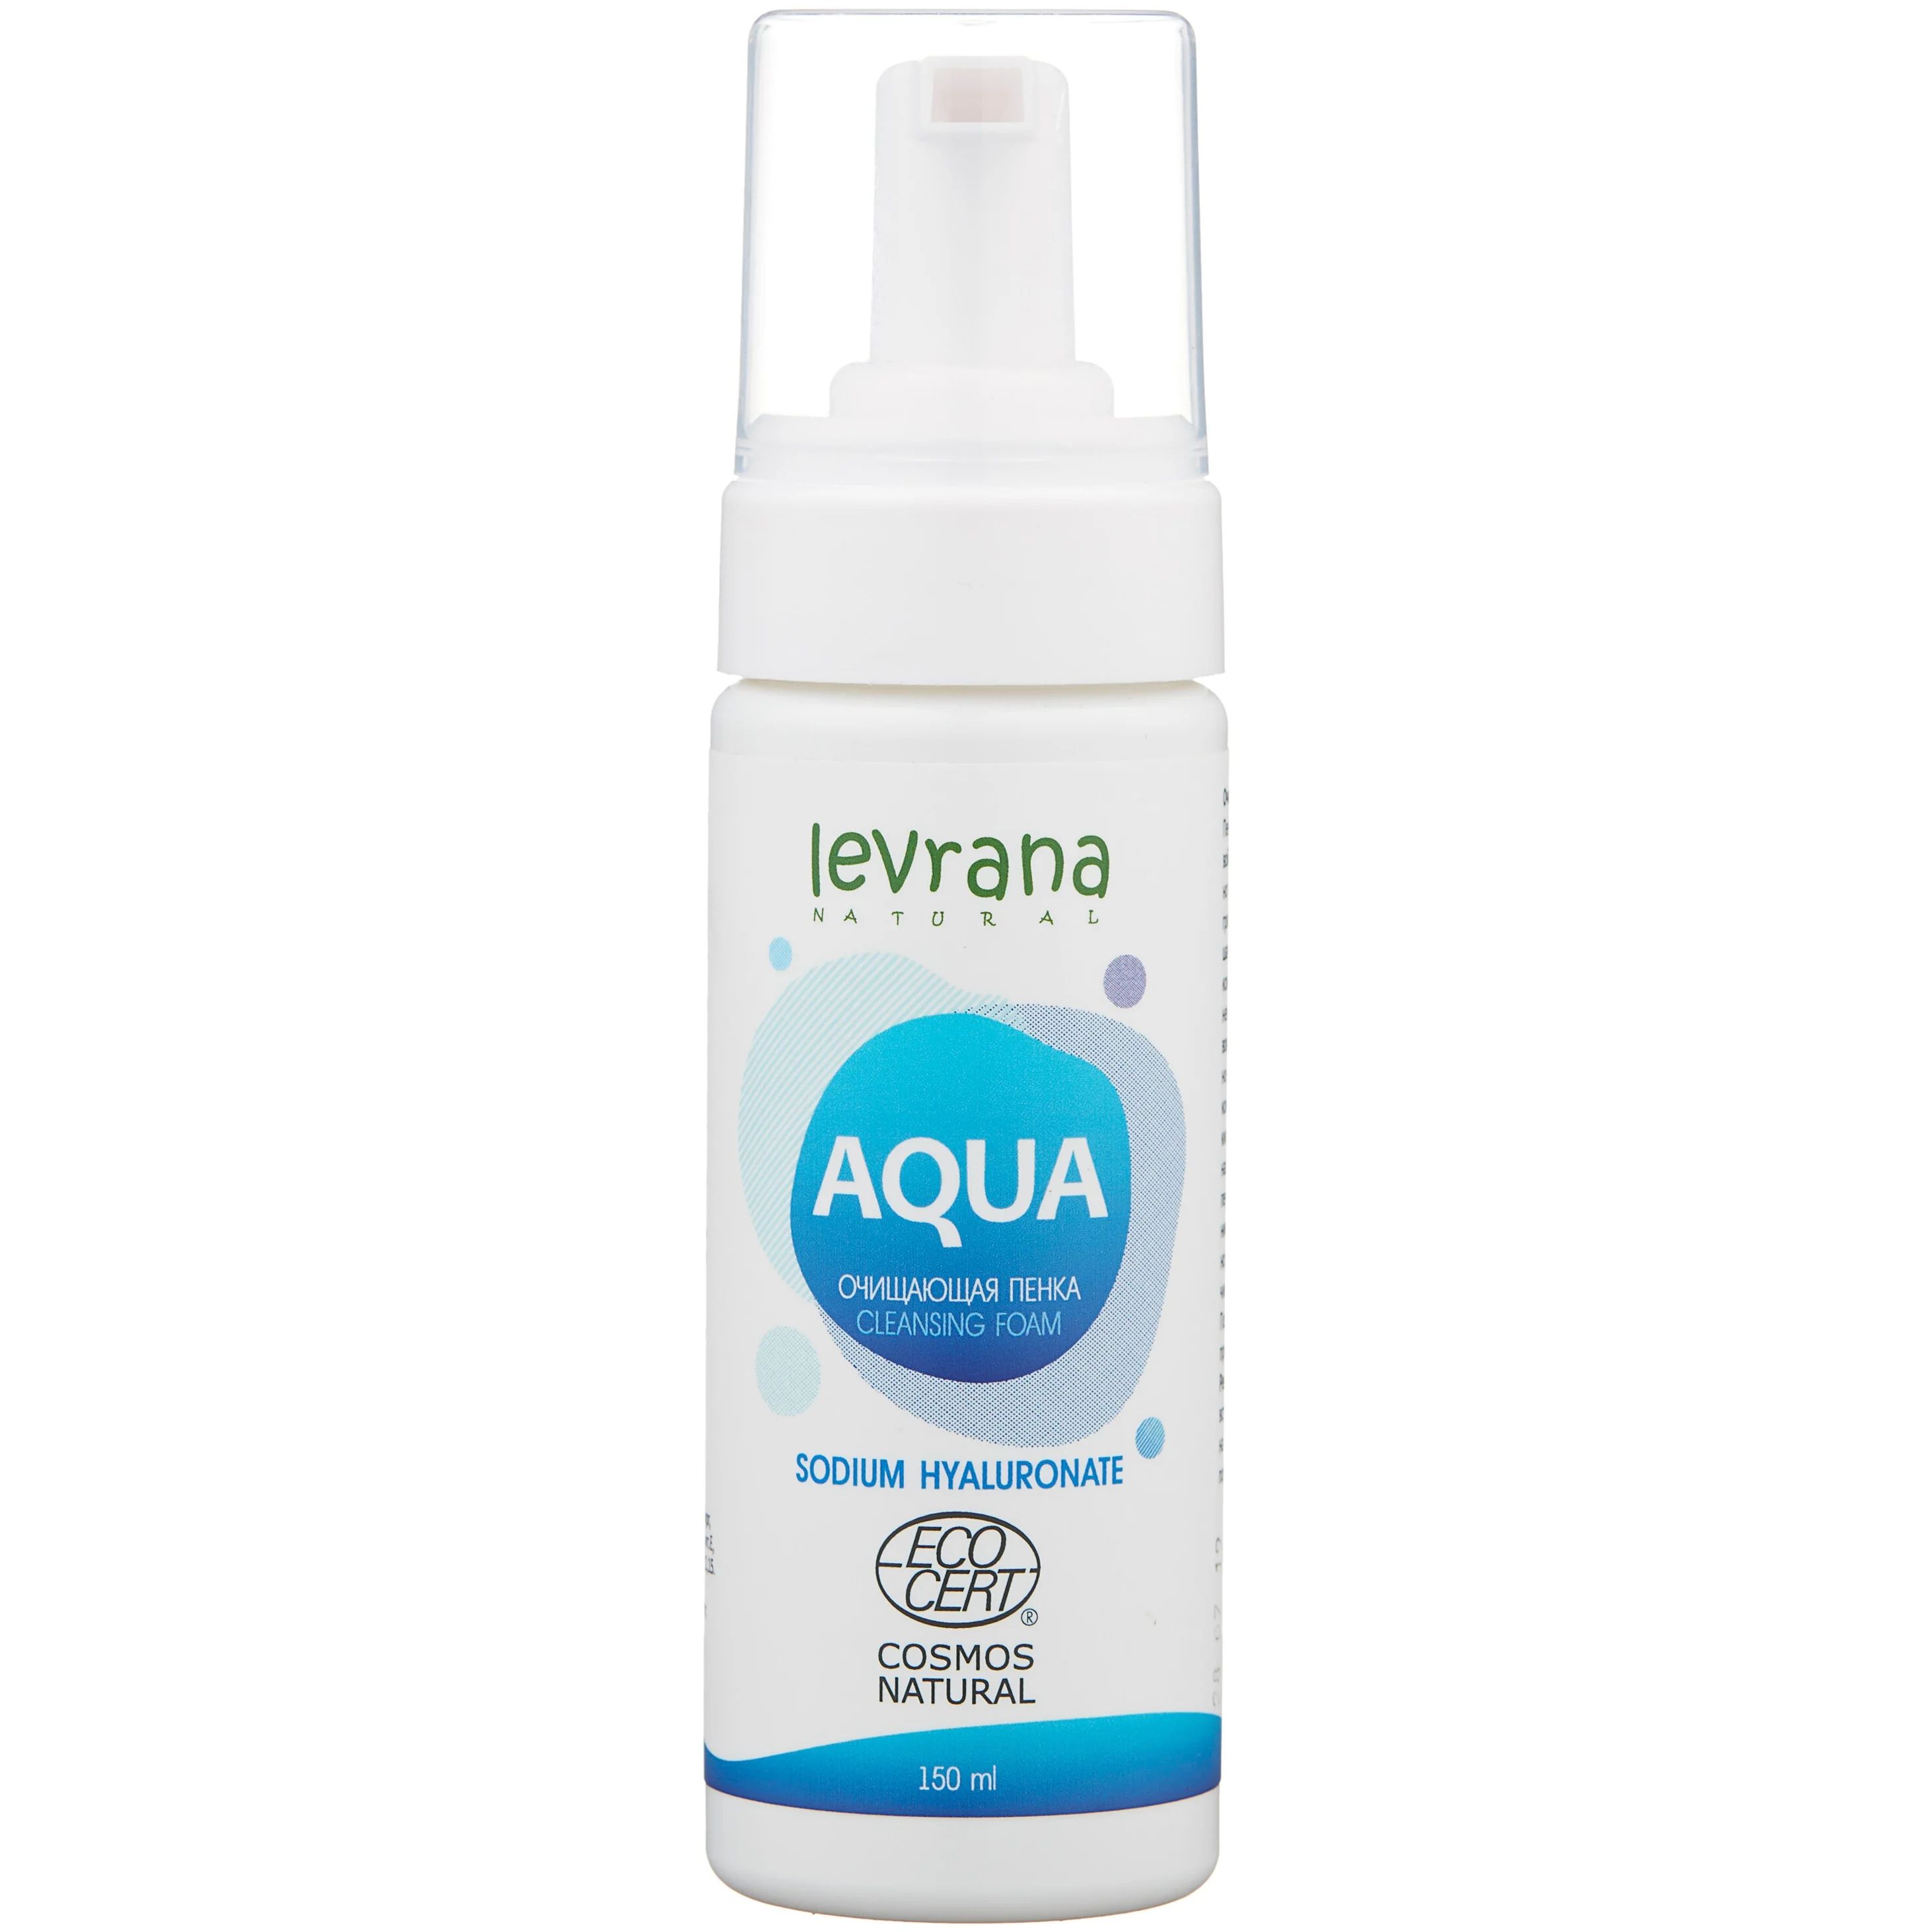 Пенка для умывания LEVRANA Aqua с гиалуроновой кислотой, увлажняющая, очищающая, 150 мл consly пенка для умывания увлажняющая с гиалуроновой кислотой hydrate